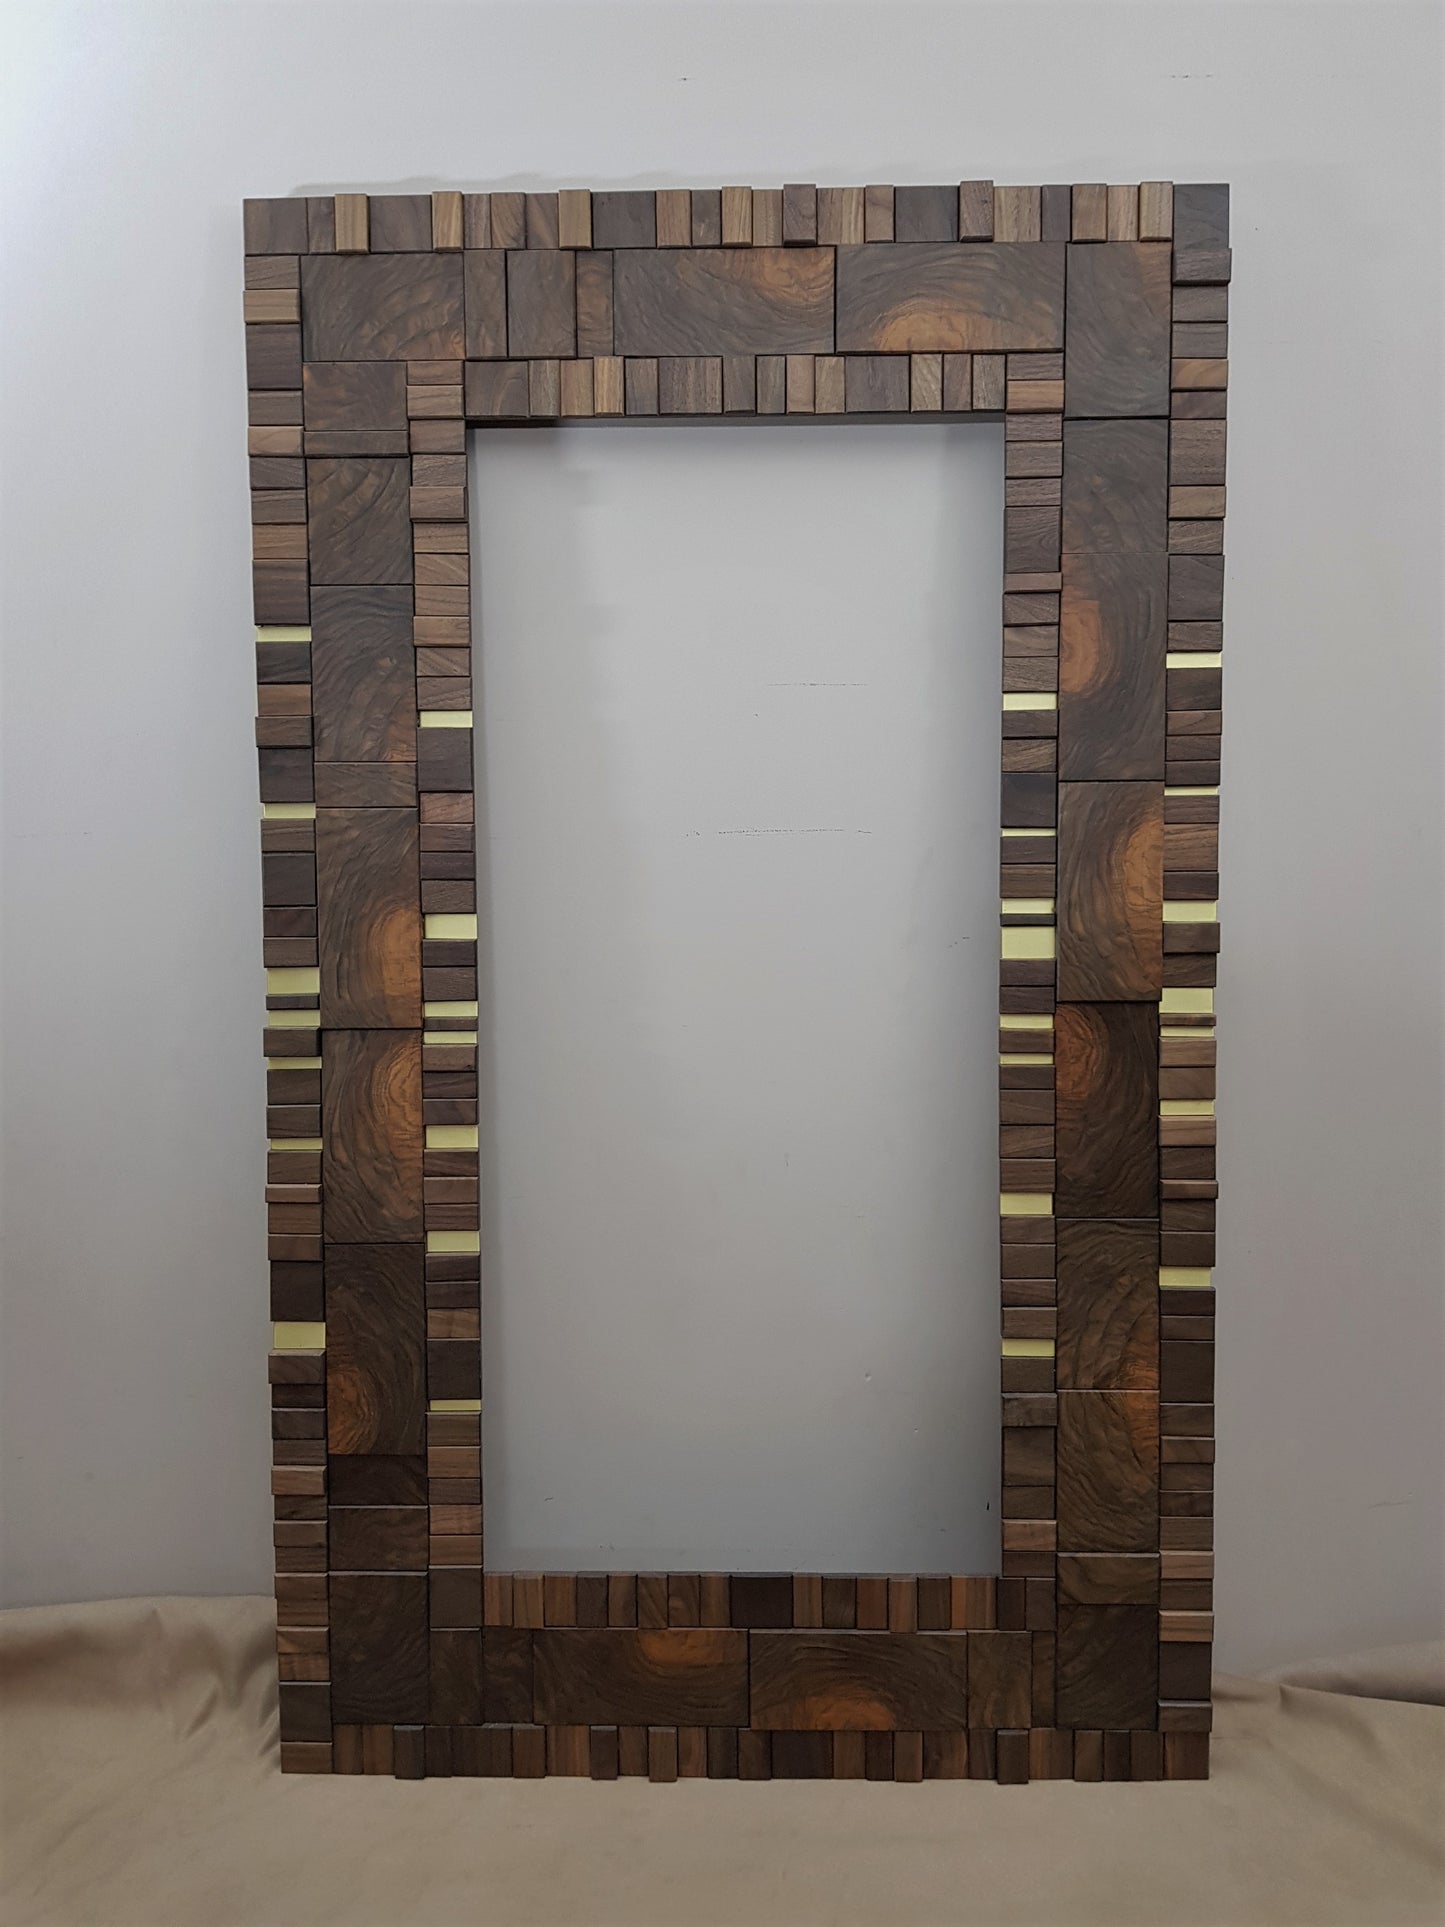 Handmade centrepiece statement mirror frame in end grain figured walnut and brass